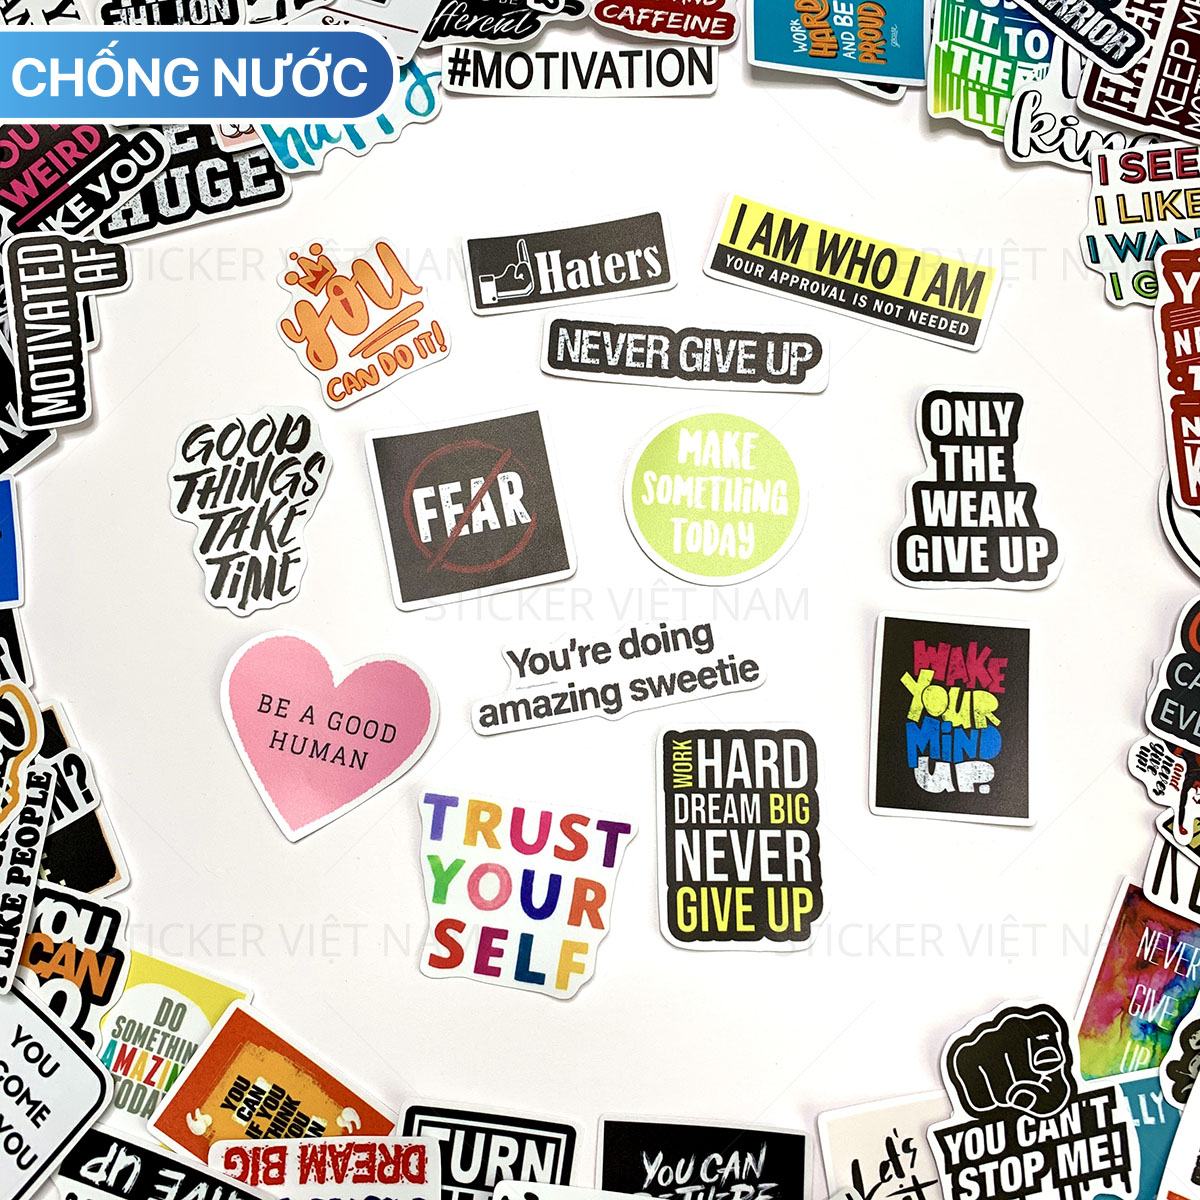 Sticker Tạo Động Lực Motivated Ngẫu Nhiên - Chất Liệu PVC Chất Lượng Cao Chống Nước - Kích Thước 4-8cm